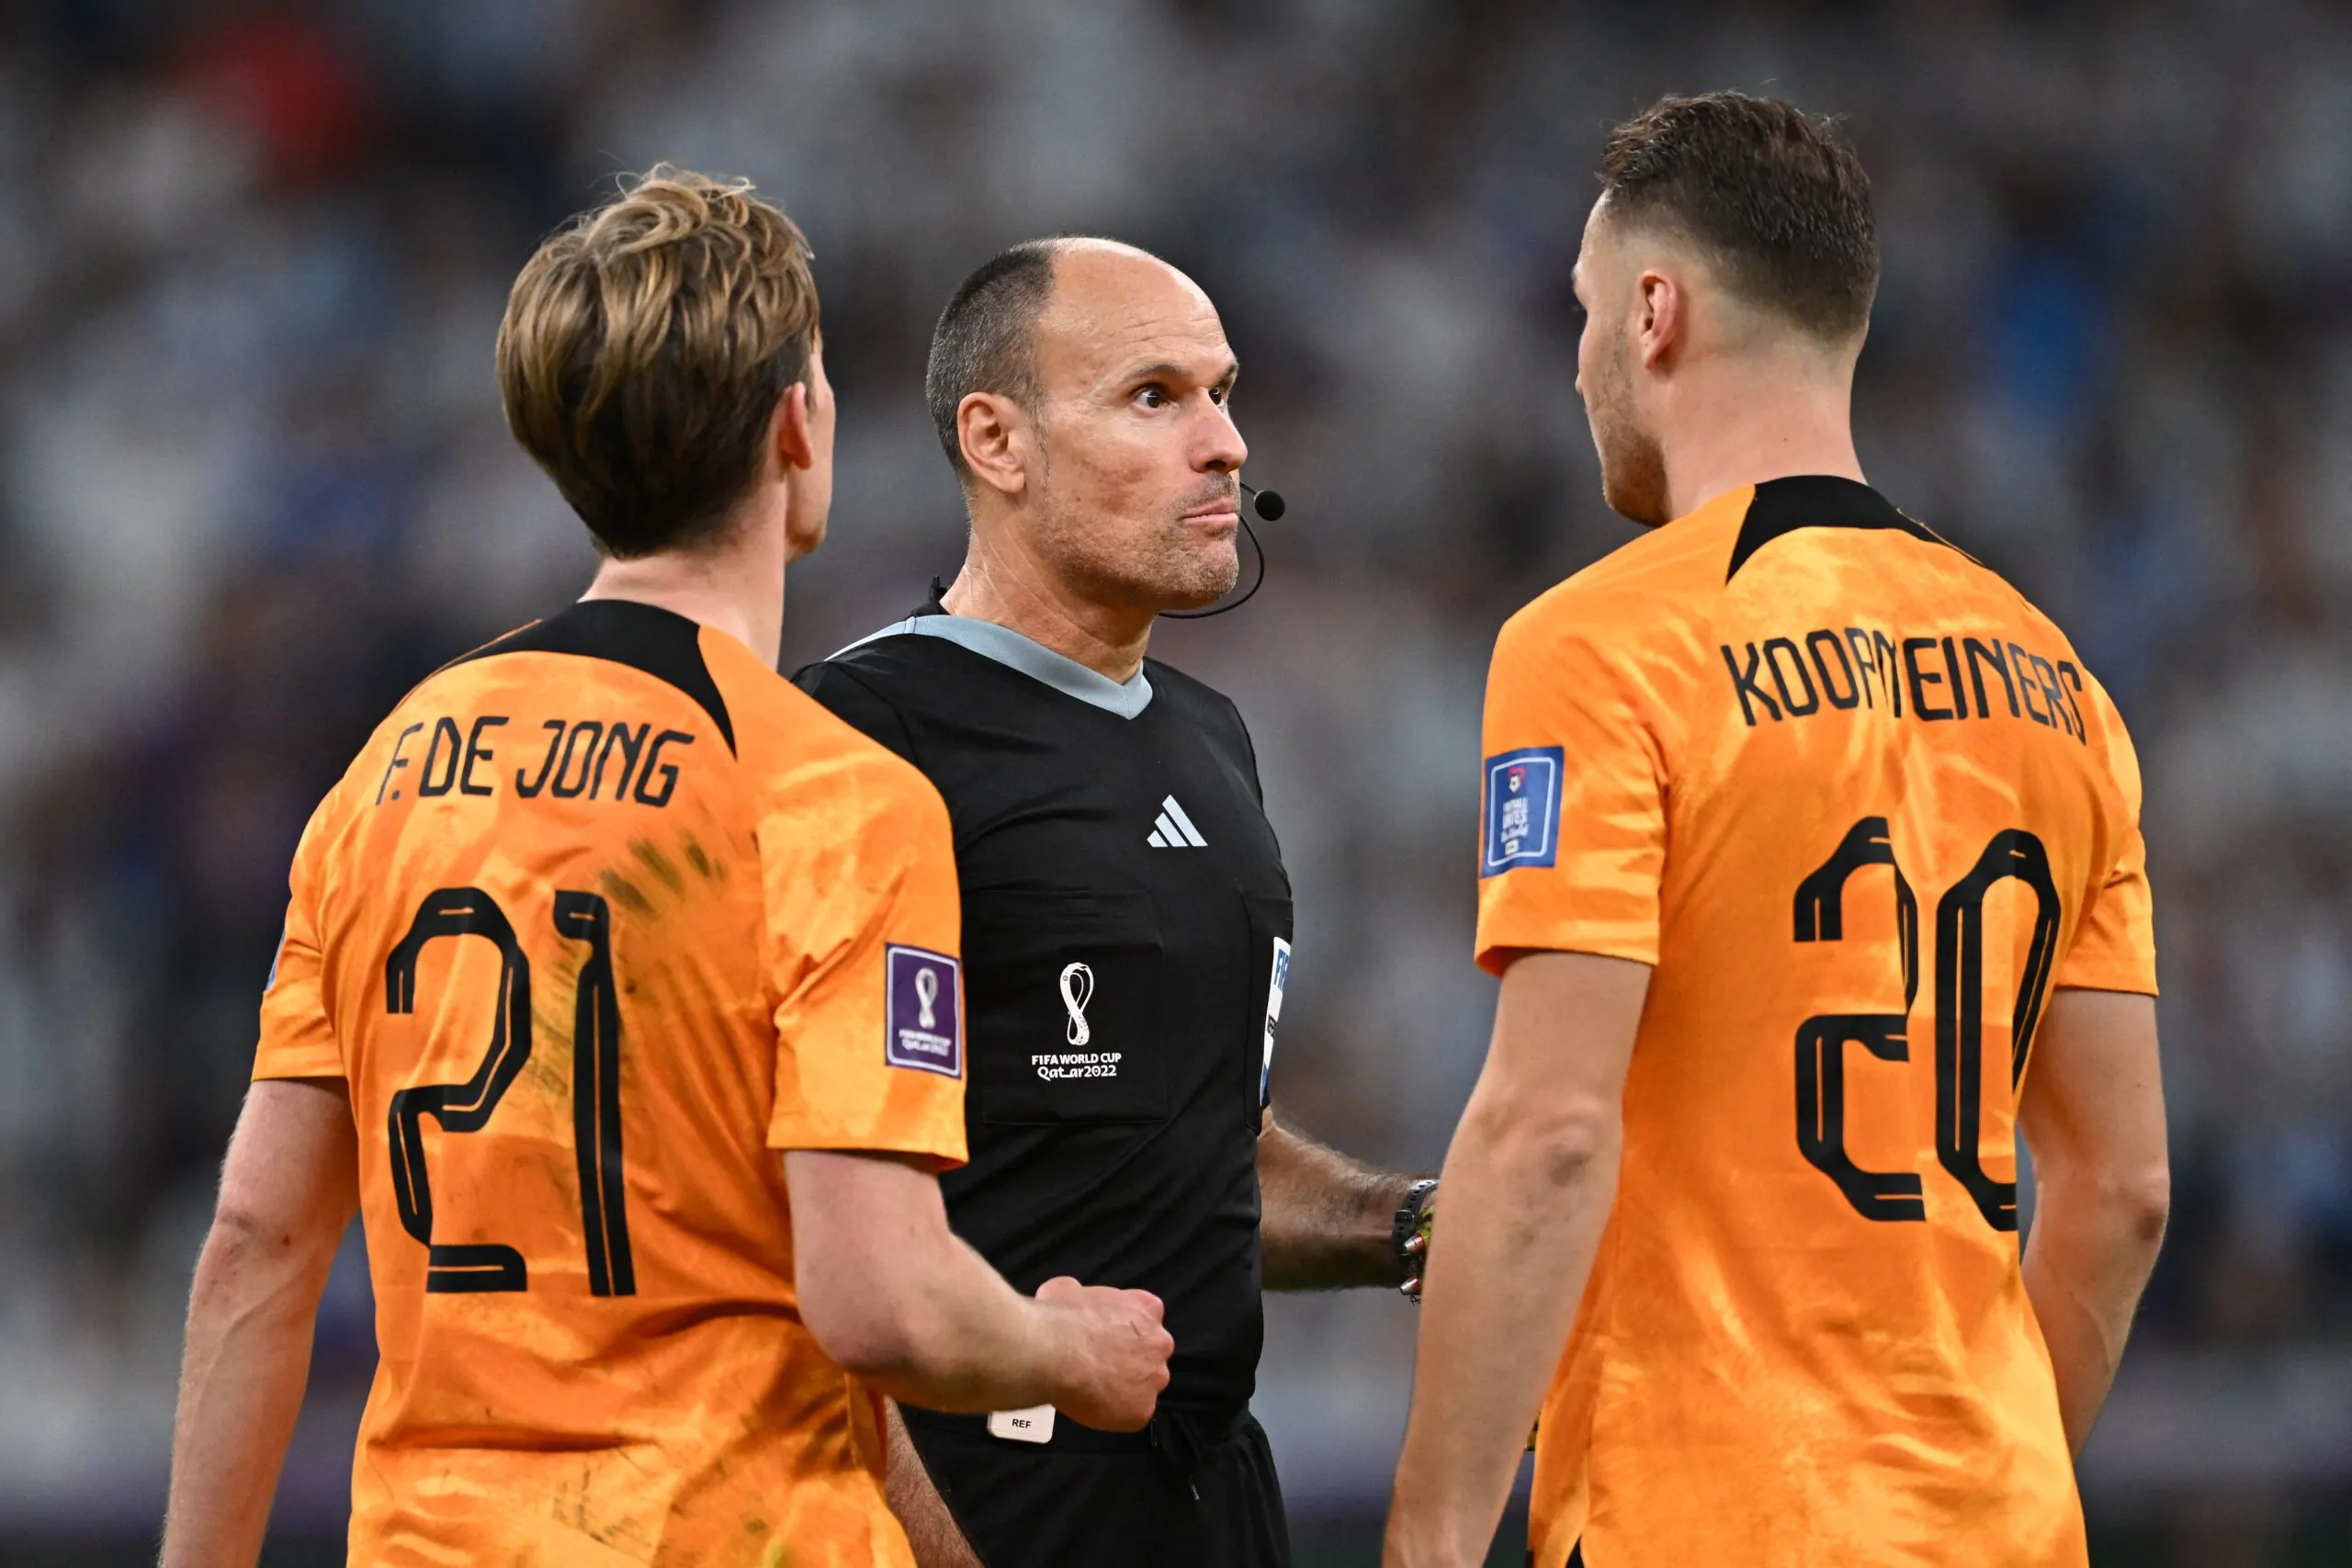 Olanda-Argentina, la FIFA decide a sorpresa sull’arbitro Lahoz